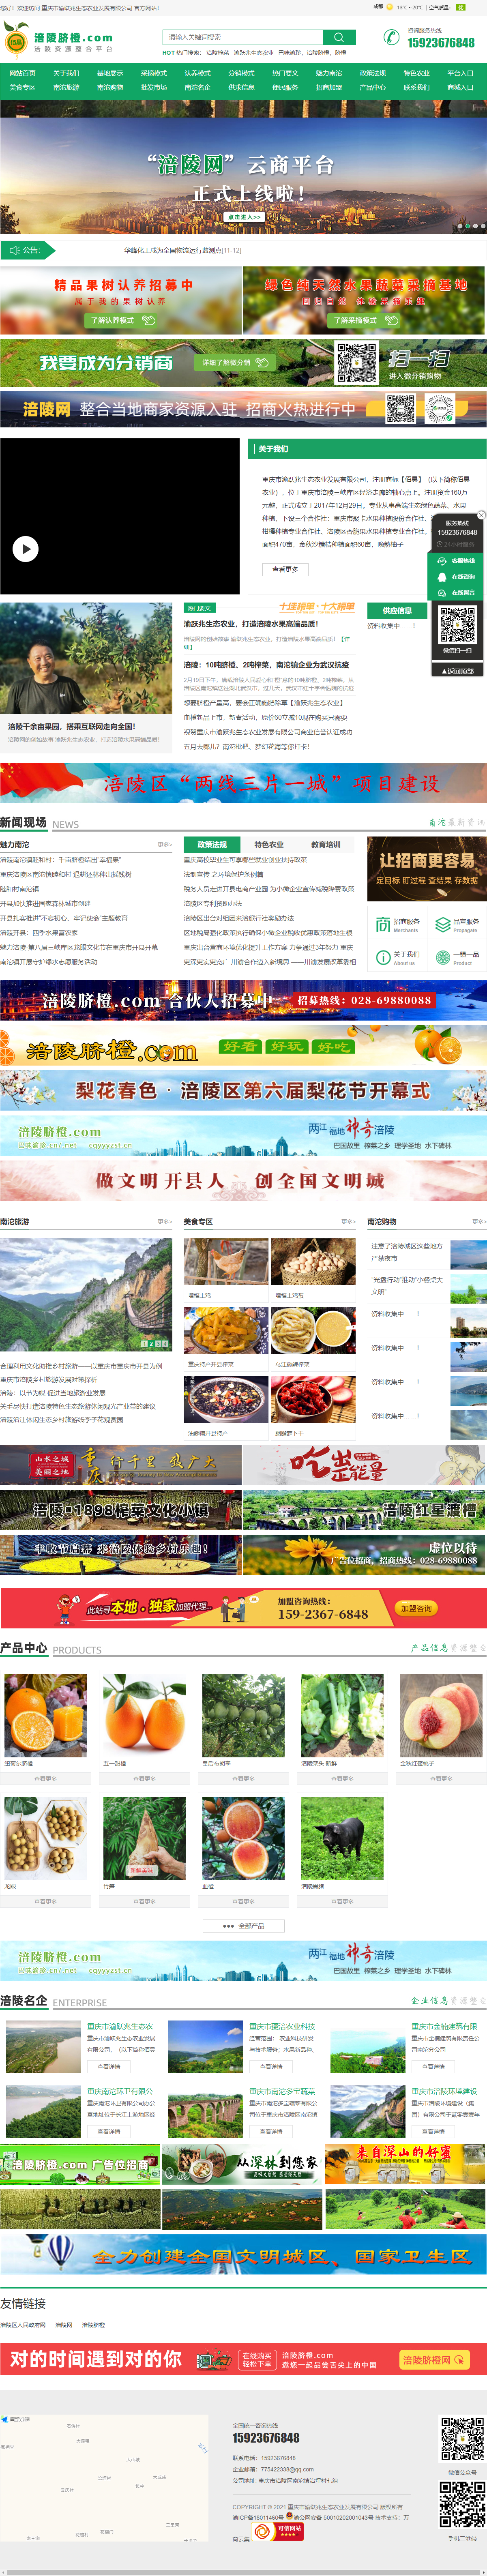 重庆市渝跃兆生态农业发展有限公司网站案例